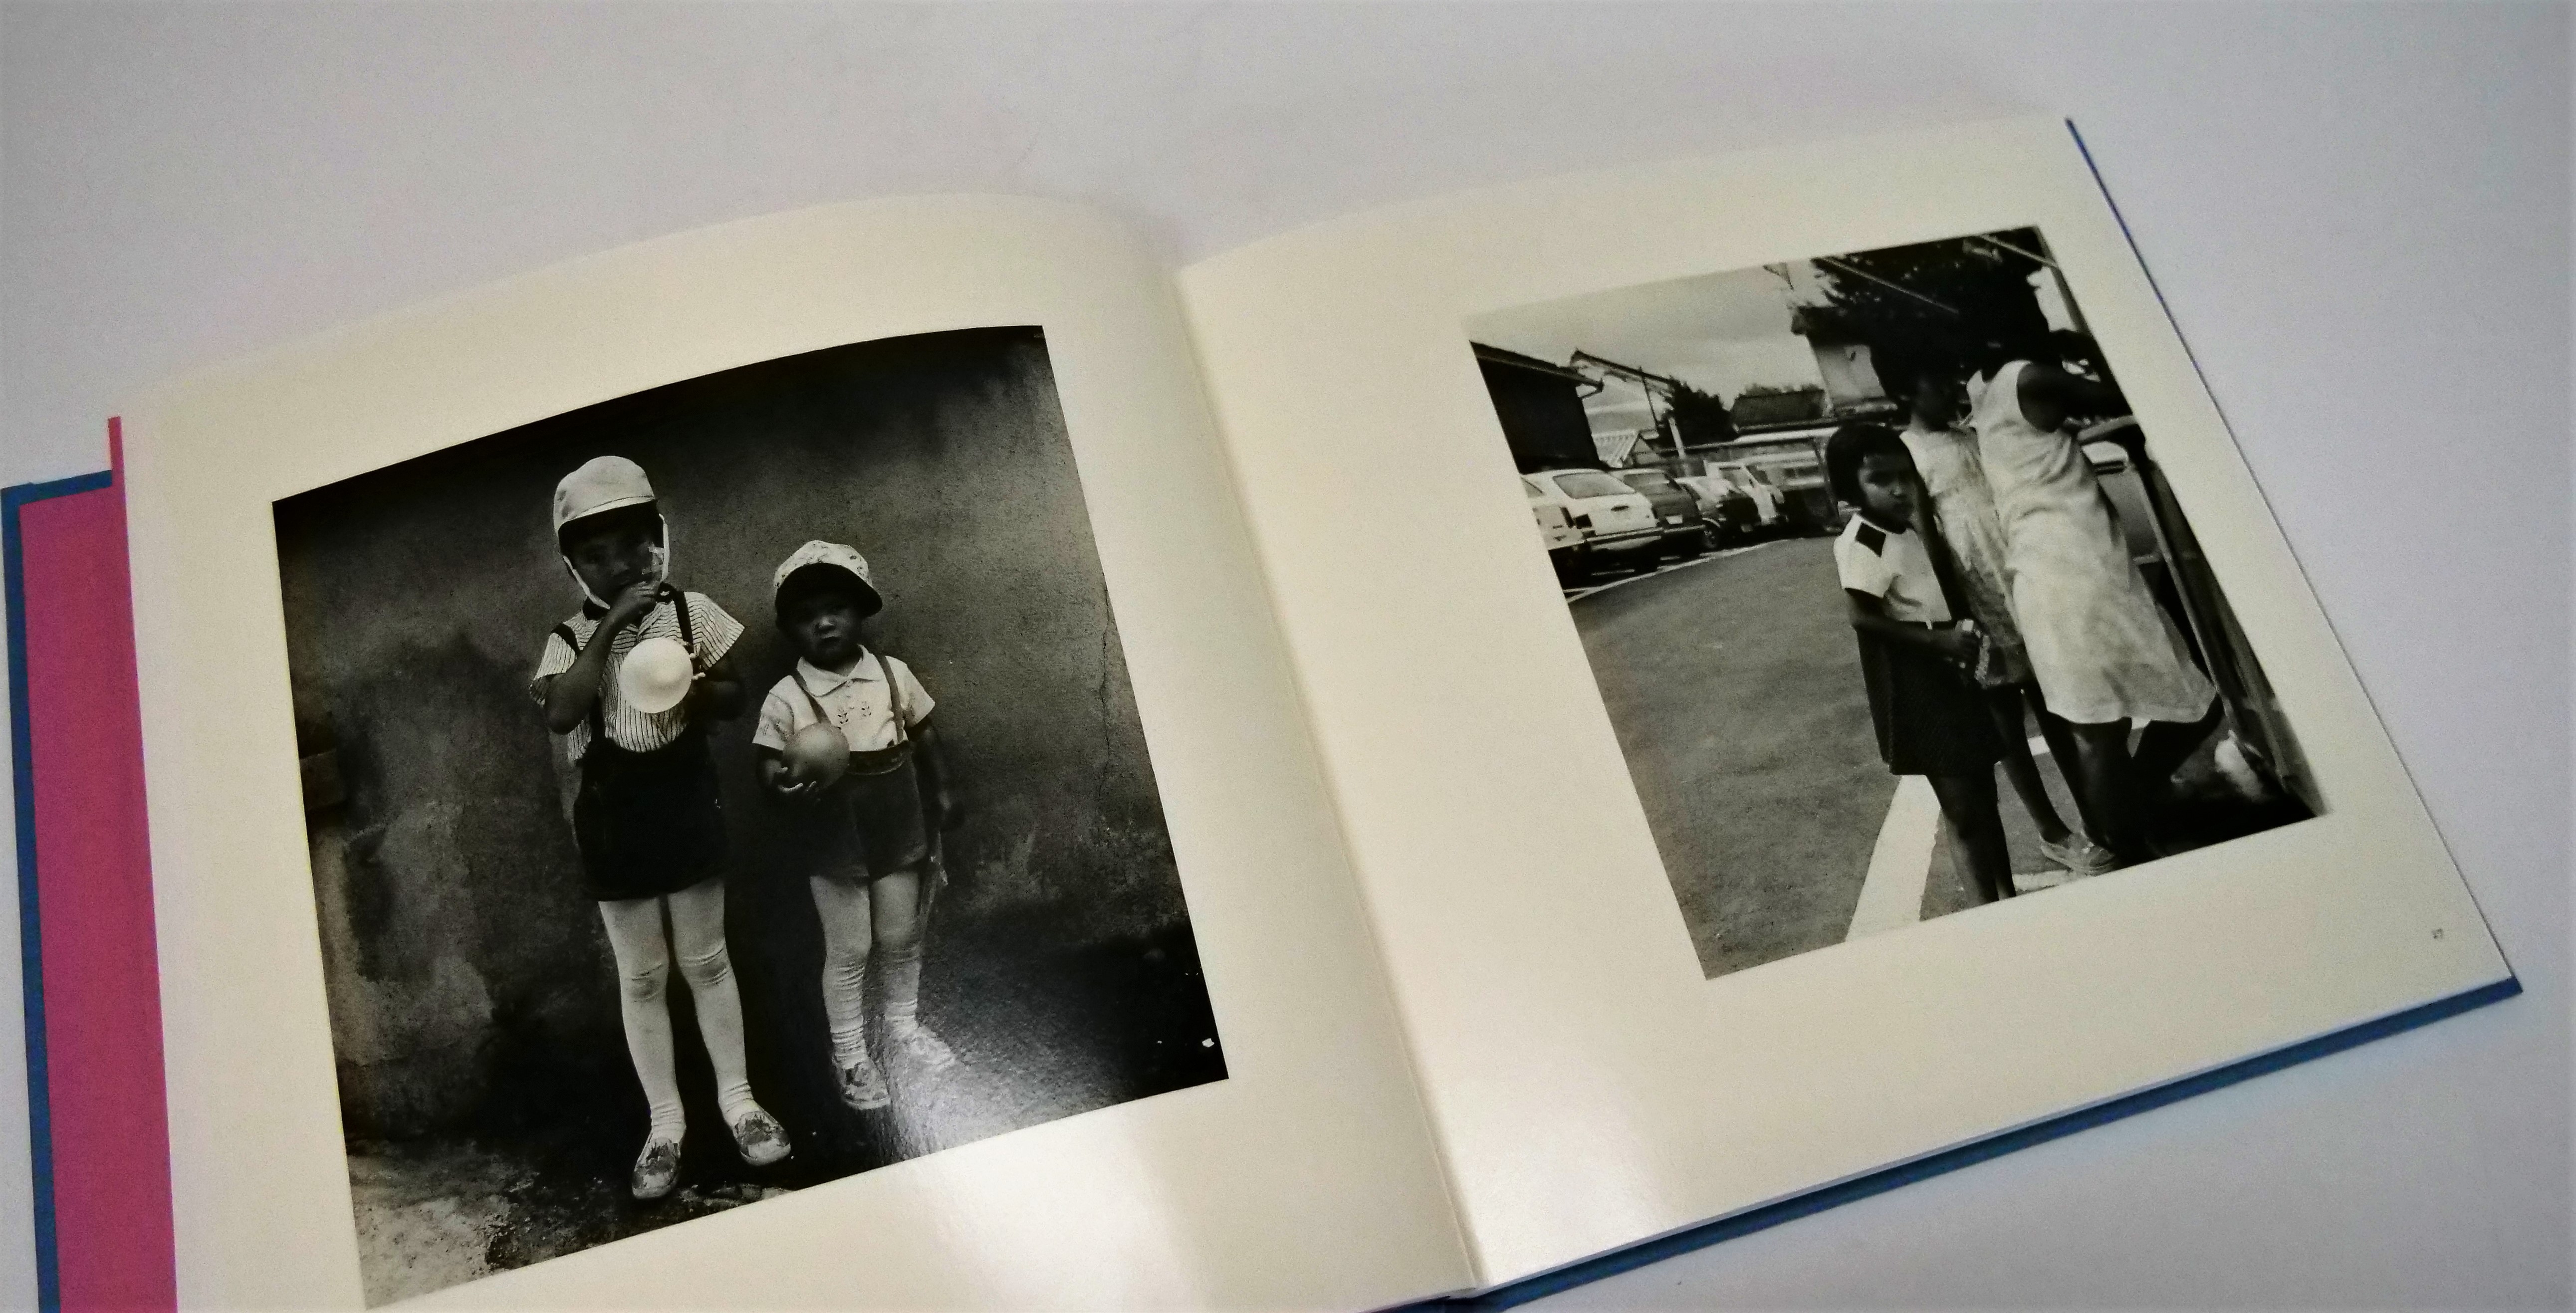 写真集未収録作品を多数含む“全ての大人が持っていた幼年時代”をテーマ 